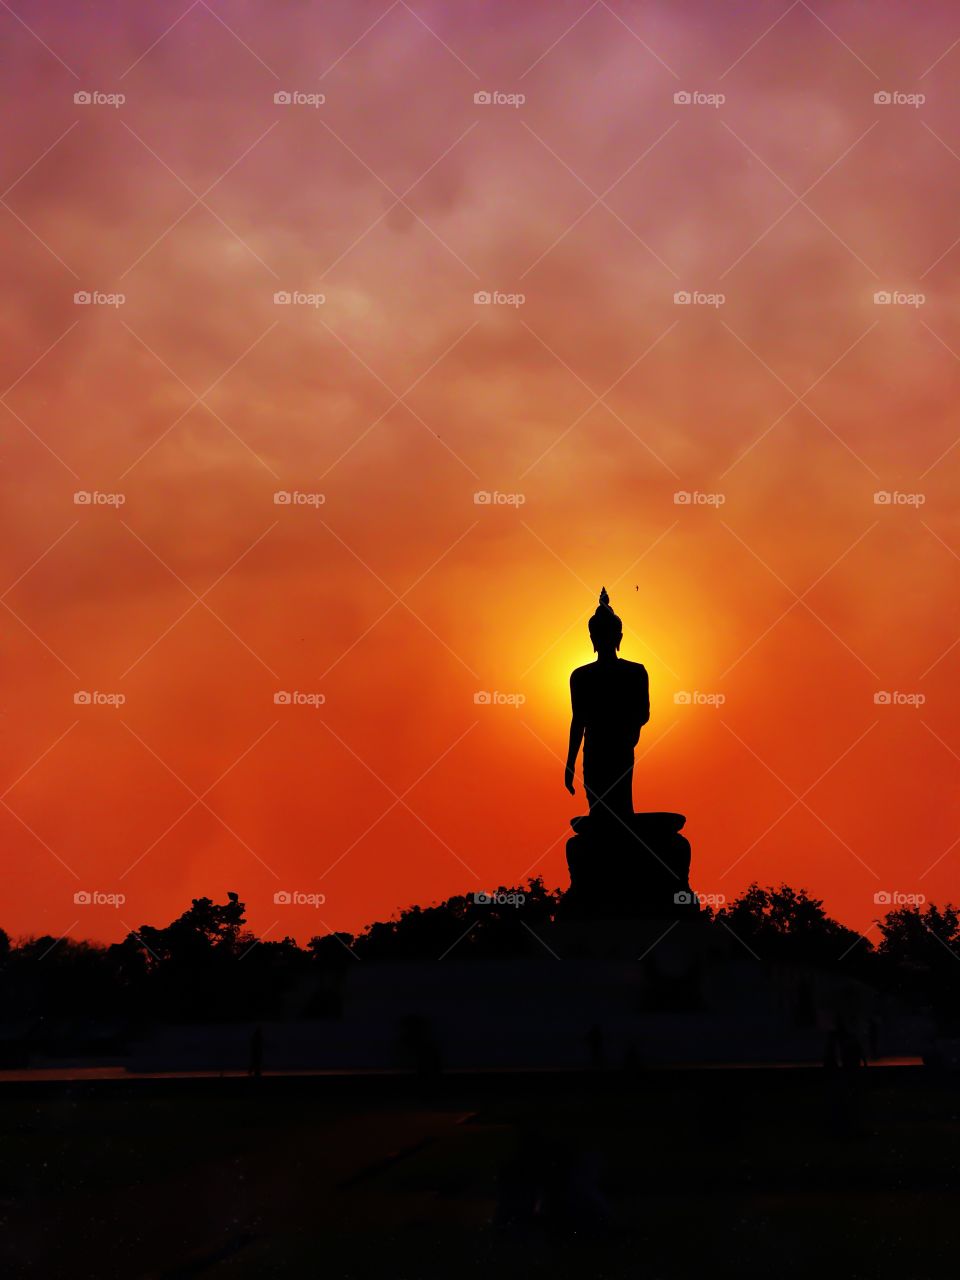 Buddha image in walking posture during sunset at Buddhamonthon, Nakhon Pathom, Thailand.